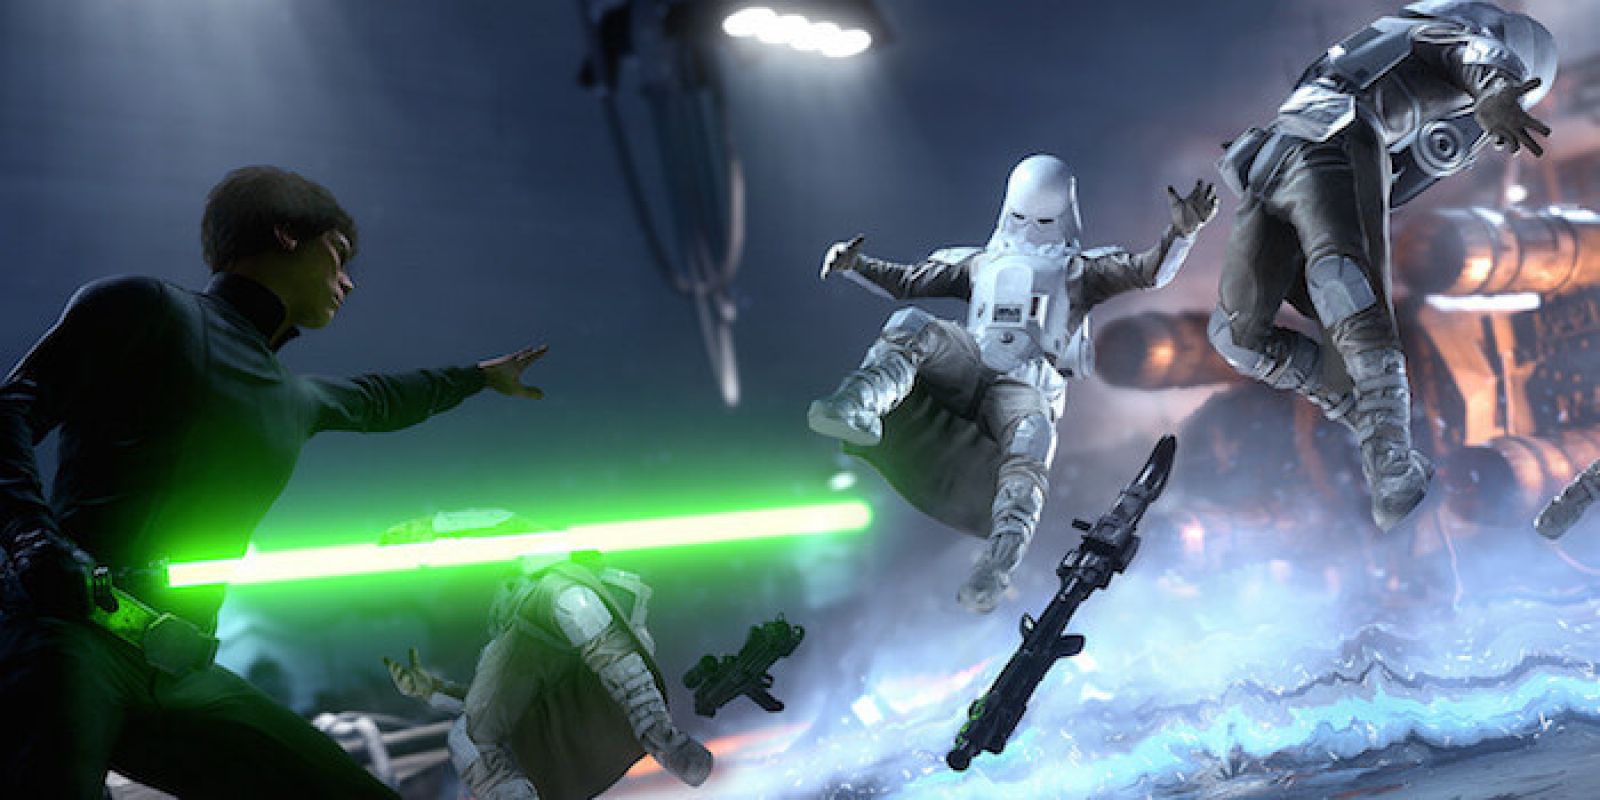 DICE анонсировала три новых режима для Star Wars Battlefront